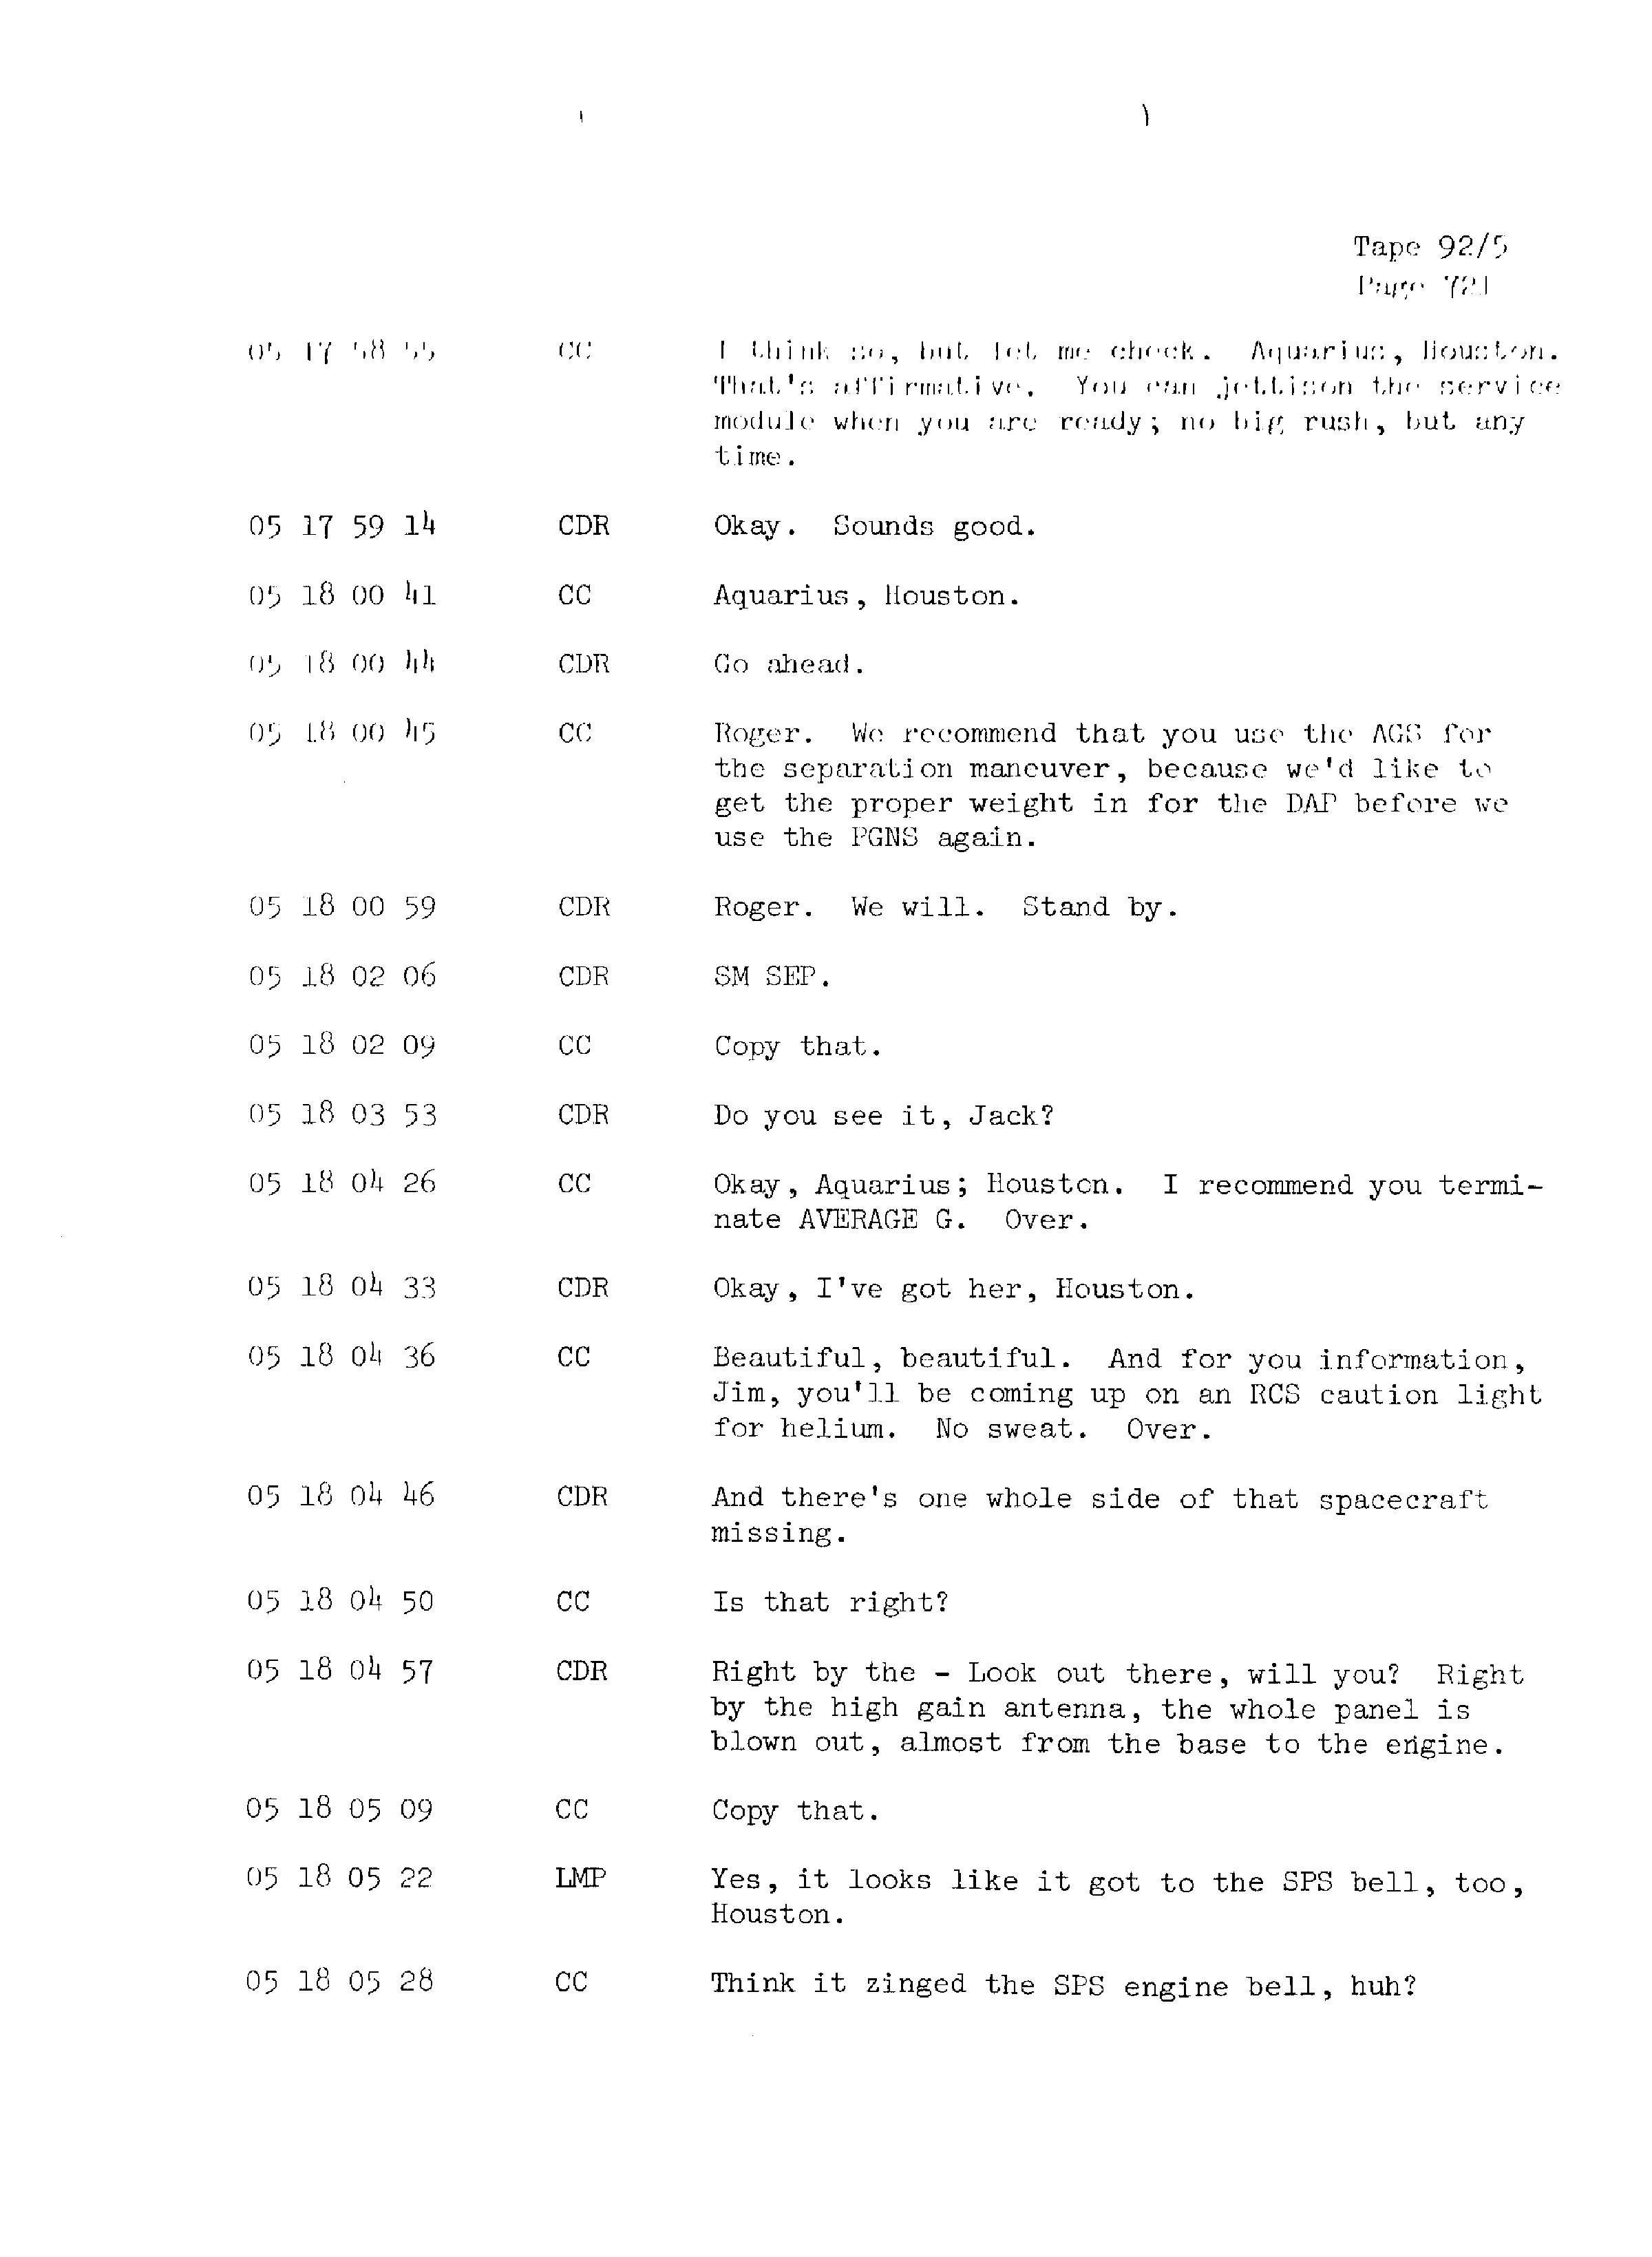 Page 728 of Apollo 13’s original transcript